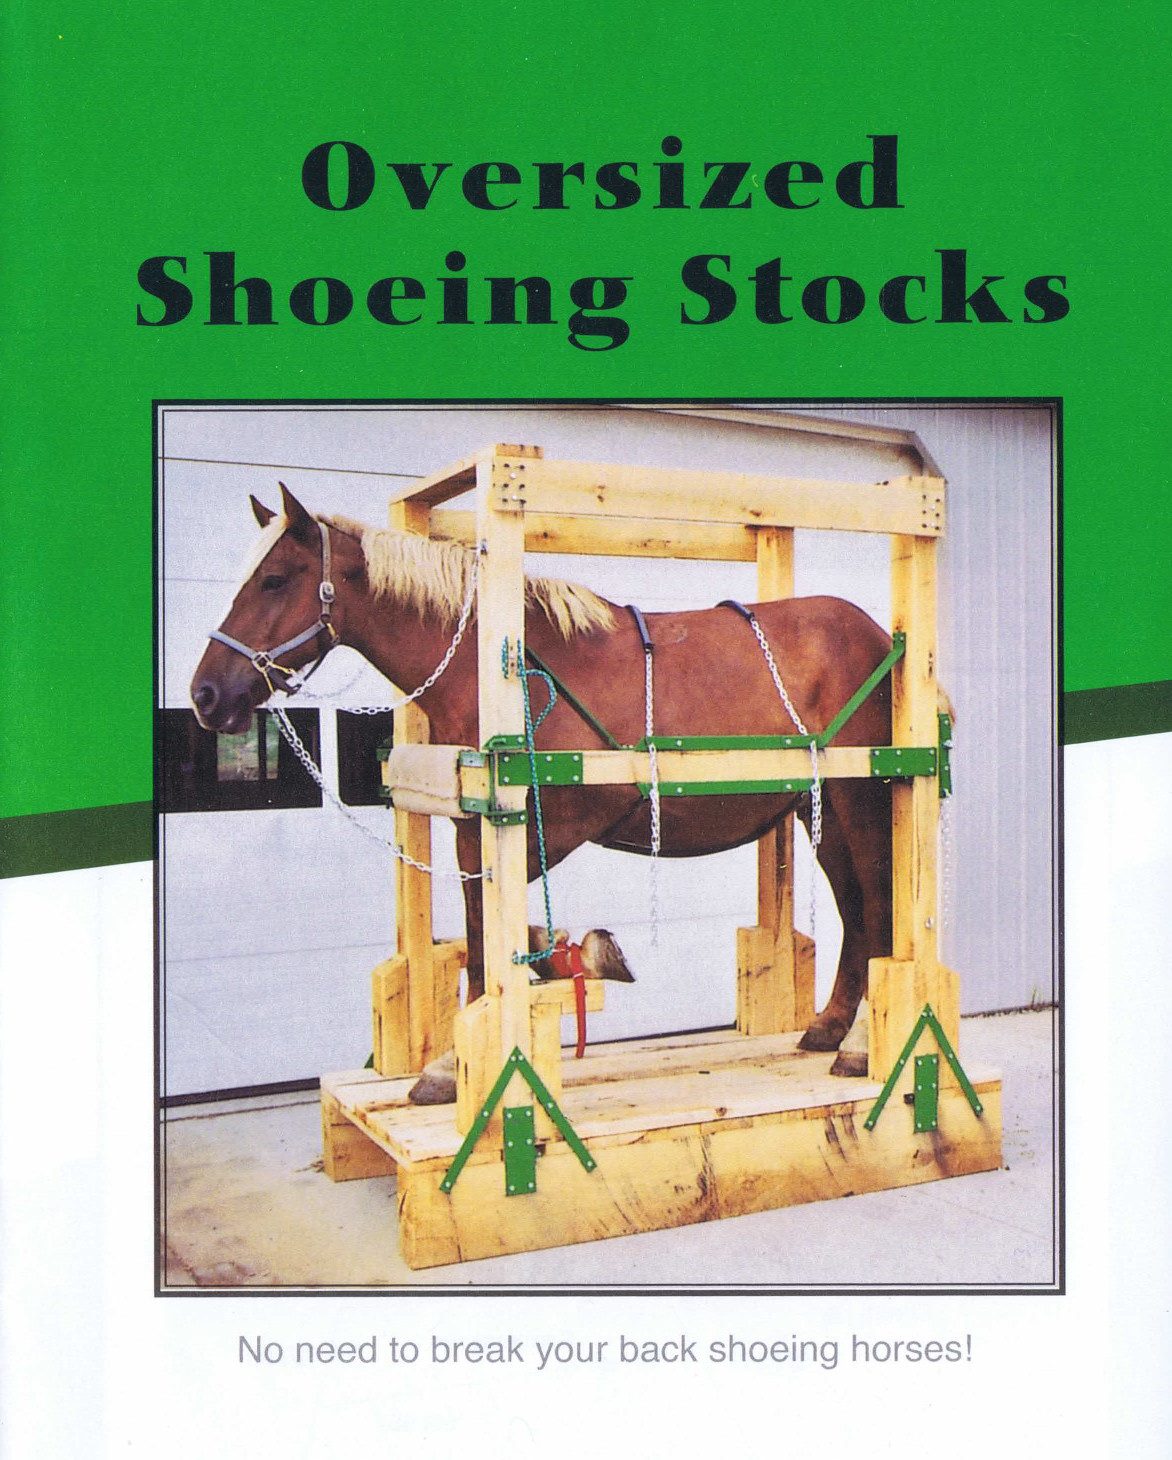 Oversize horseshoeing stocks picture